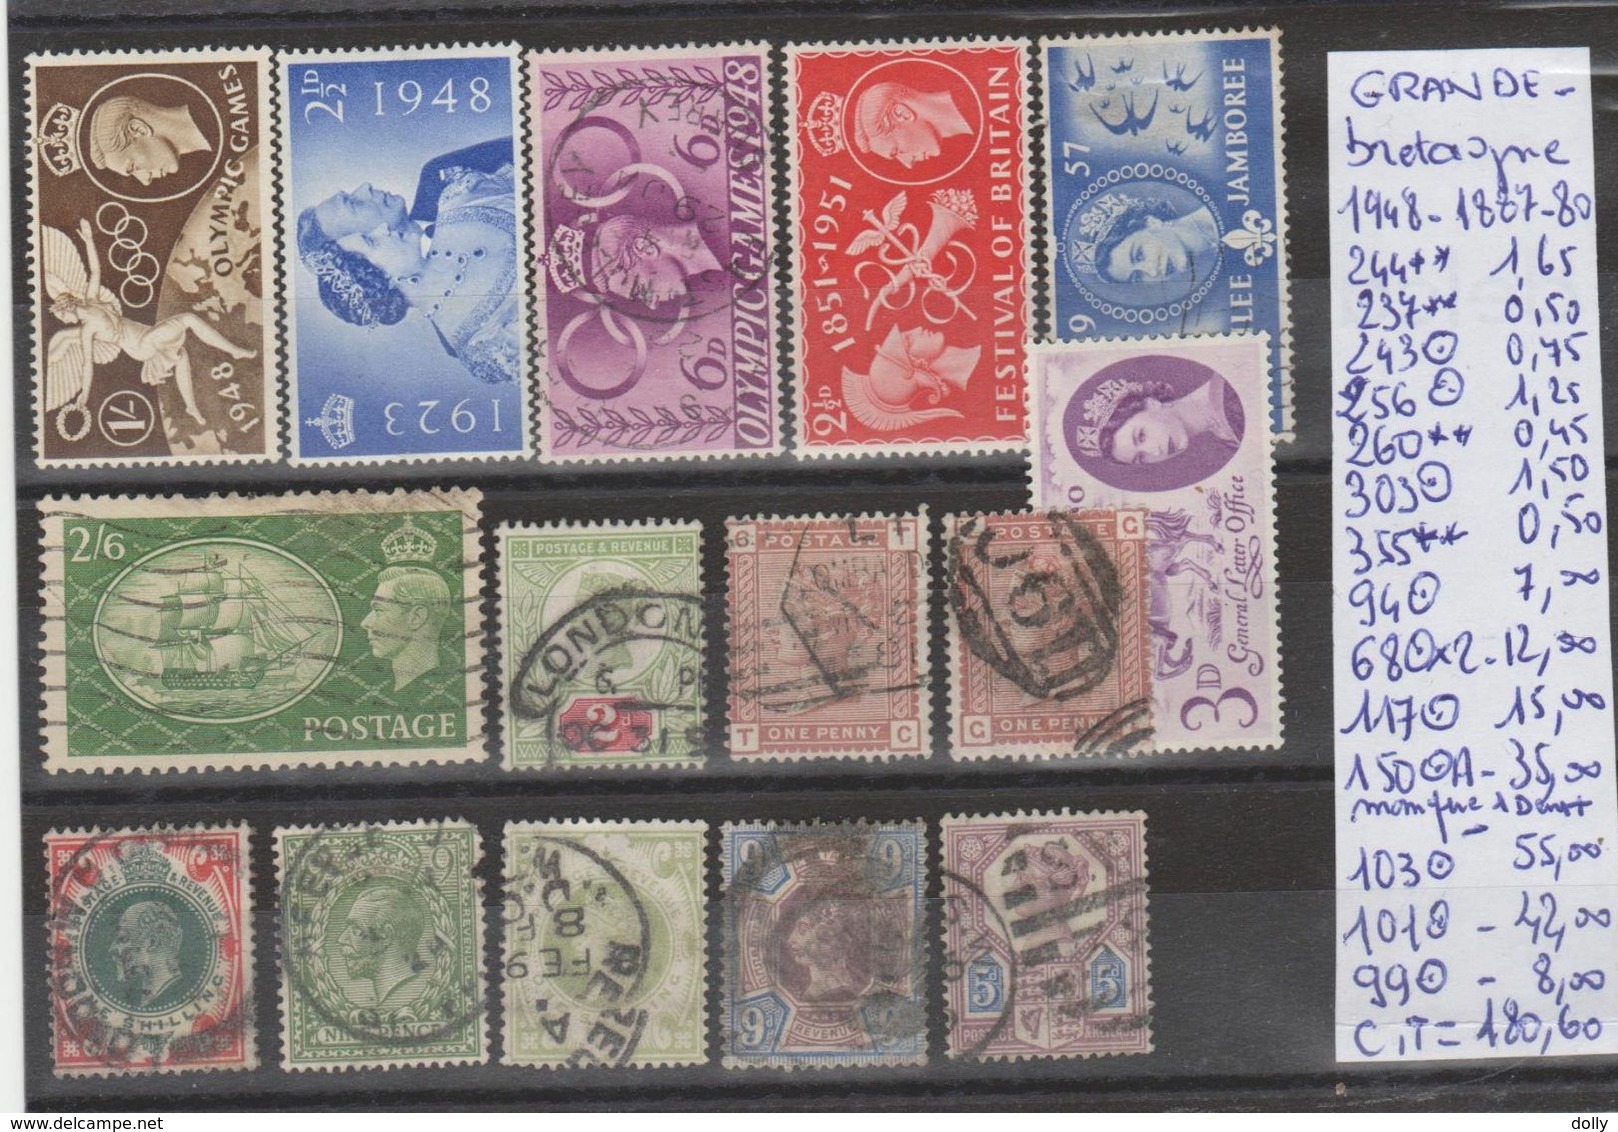 TIMBRES LOT OBLITEREES NEUF DE GRANDE-BRETAGNE Nr VOIR SUR PAPIER AVEC TIMBRES COTE      180.60€ - Unused Stamps